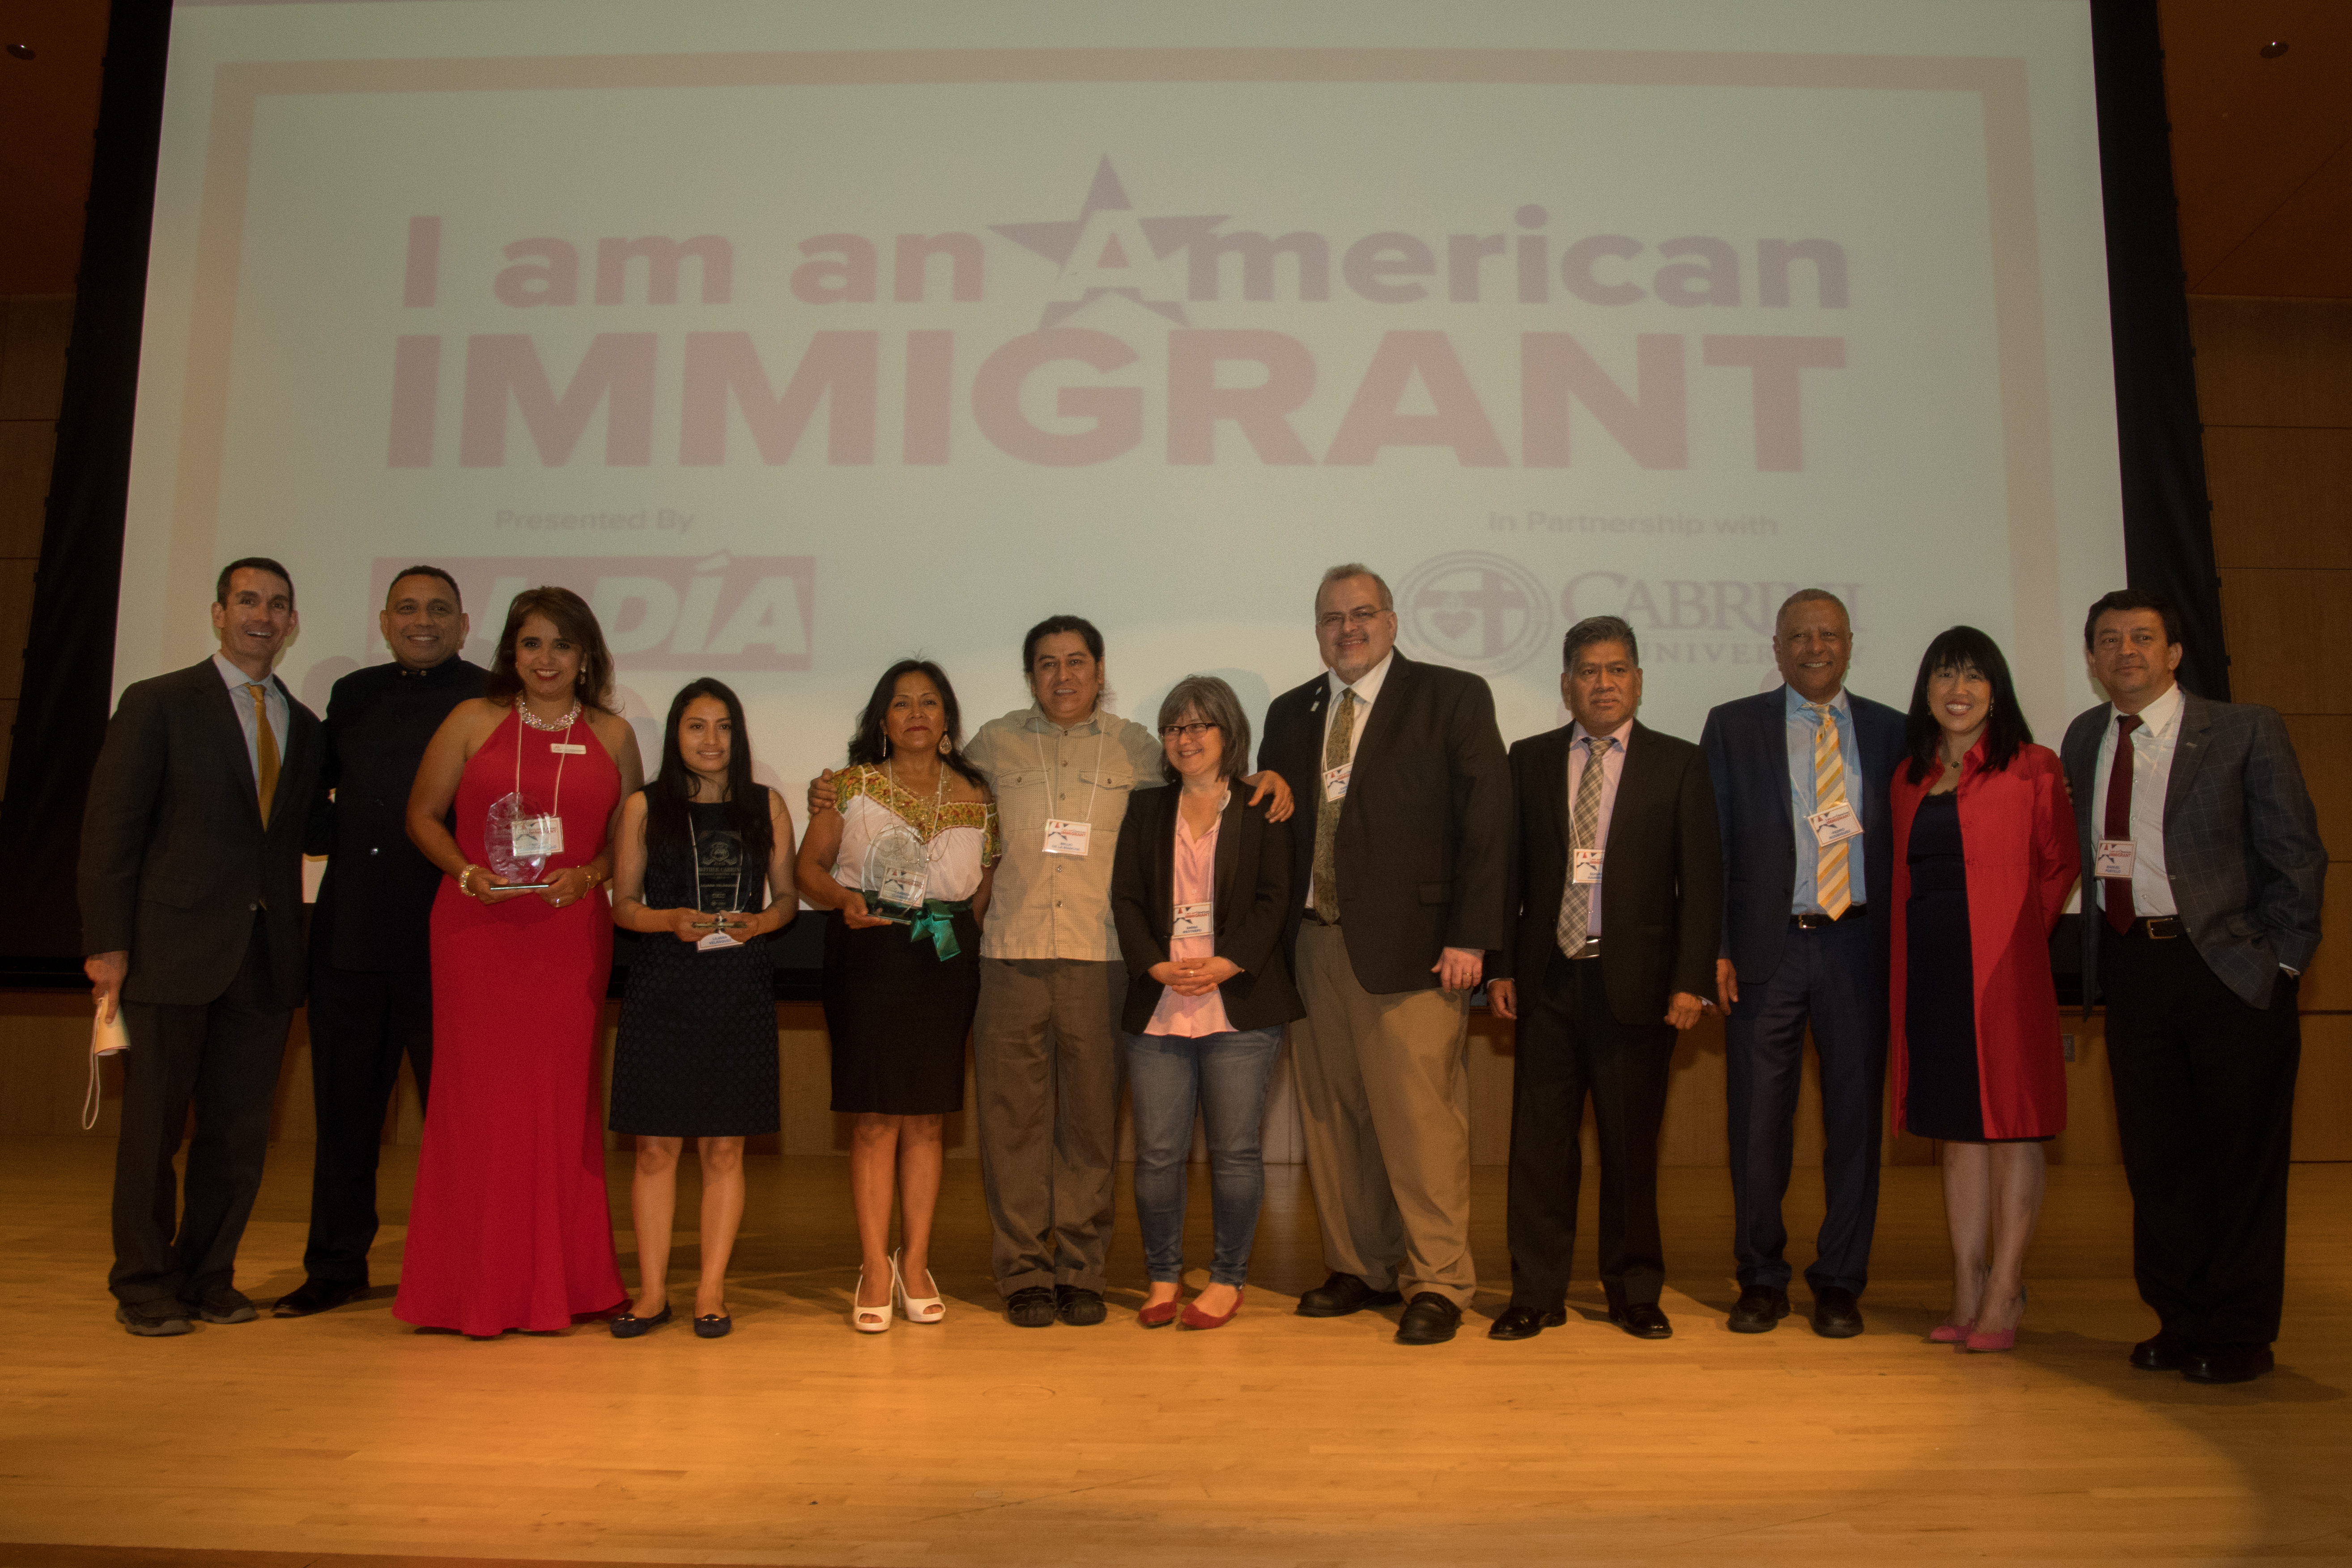 Los 12 finalistas de la campaña “I am an American Immigrant” fueron reconocidos en el evento el pasado jueves. Foto: Simón Bolívar